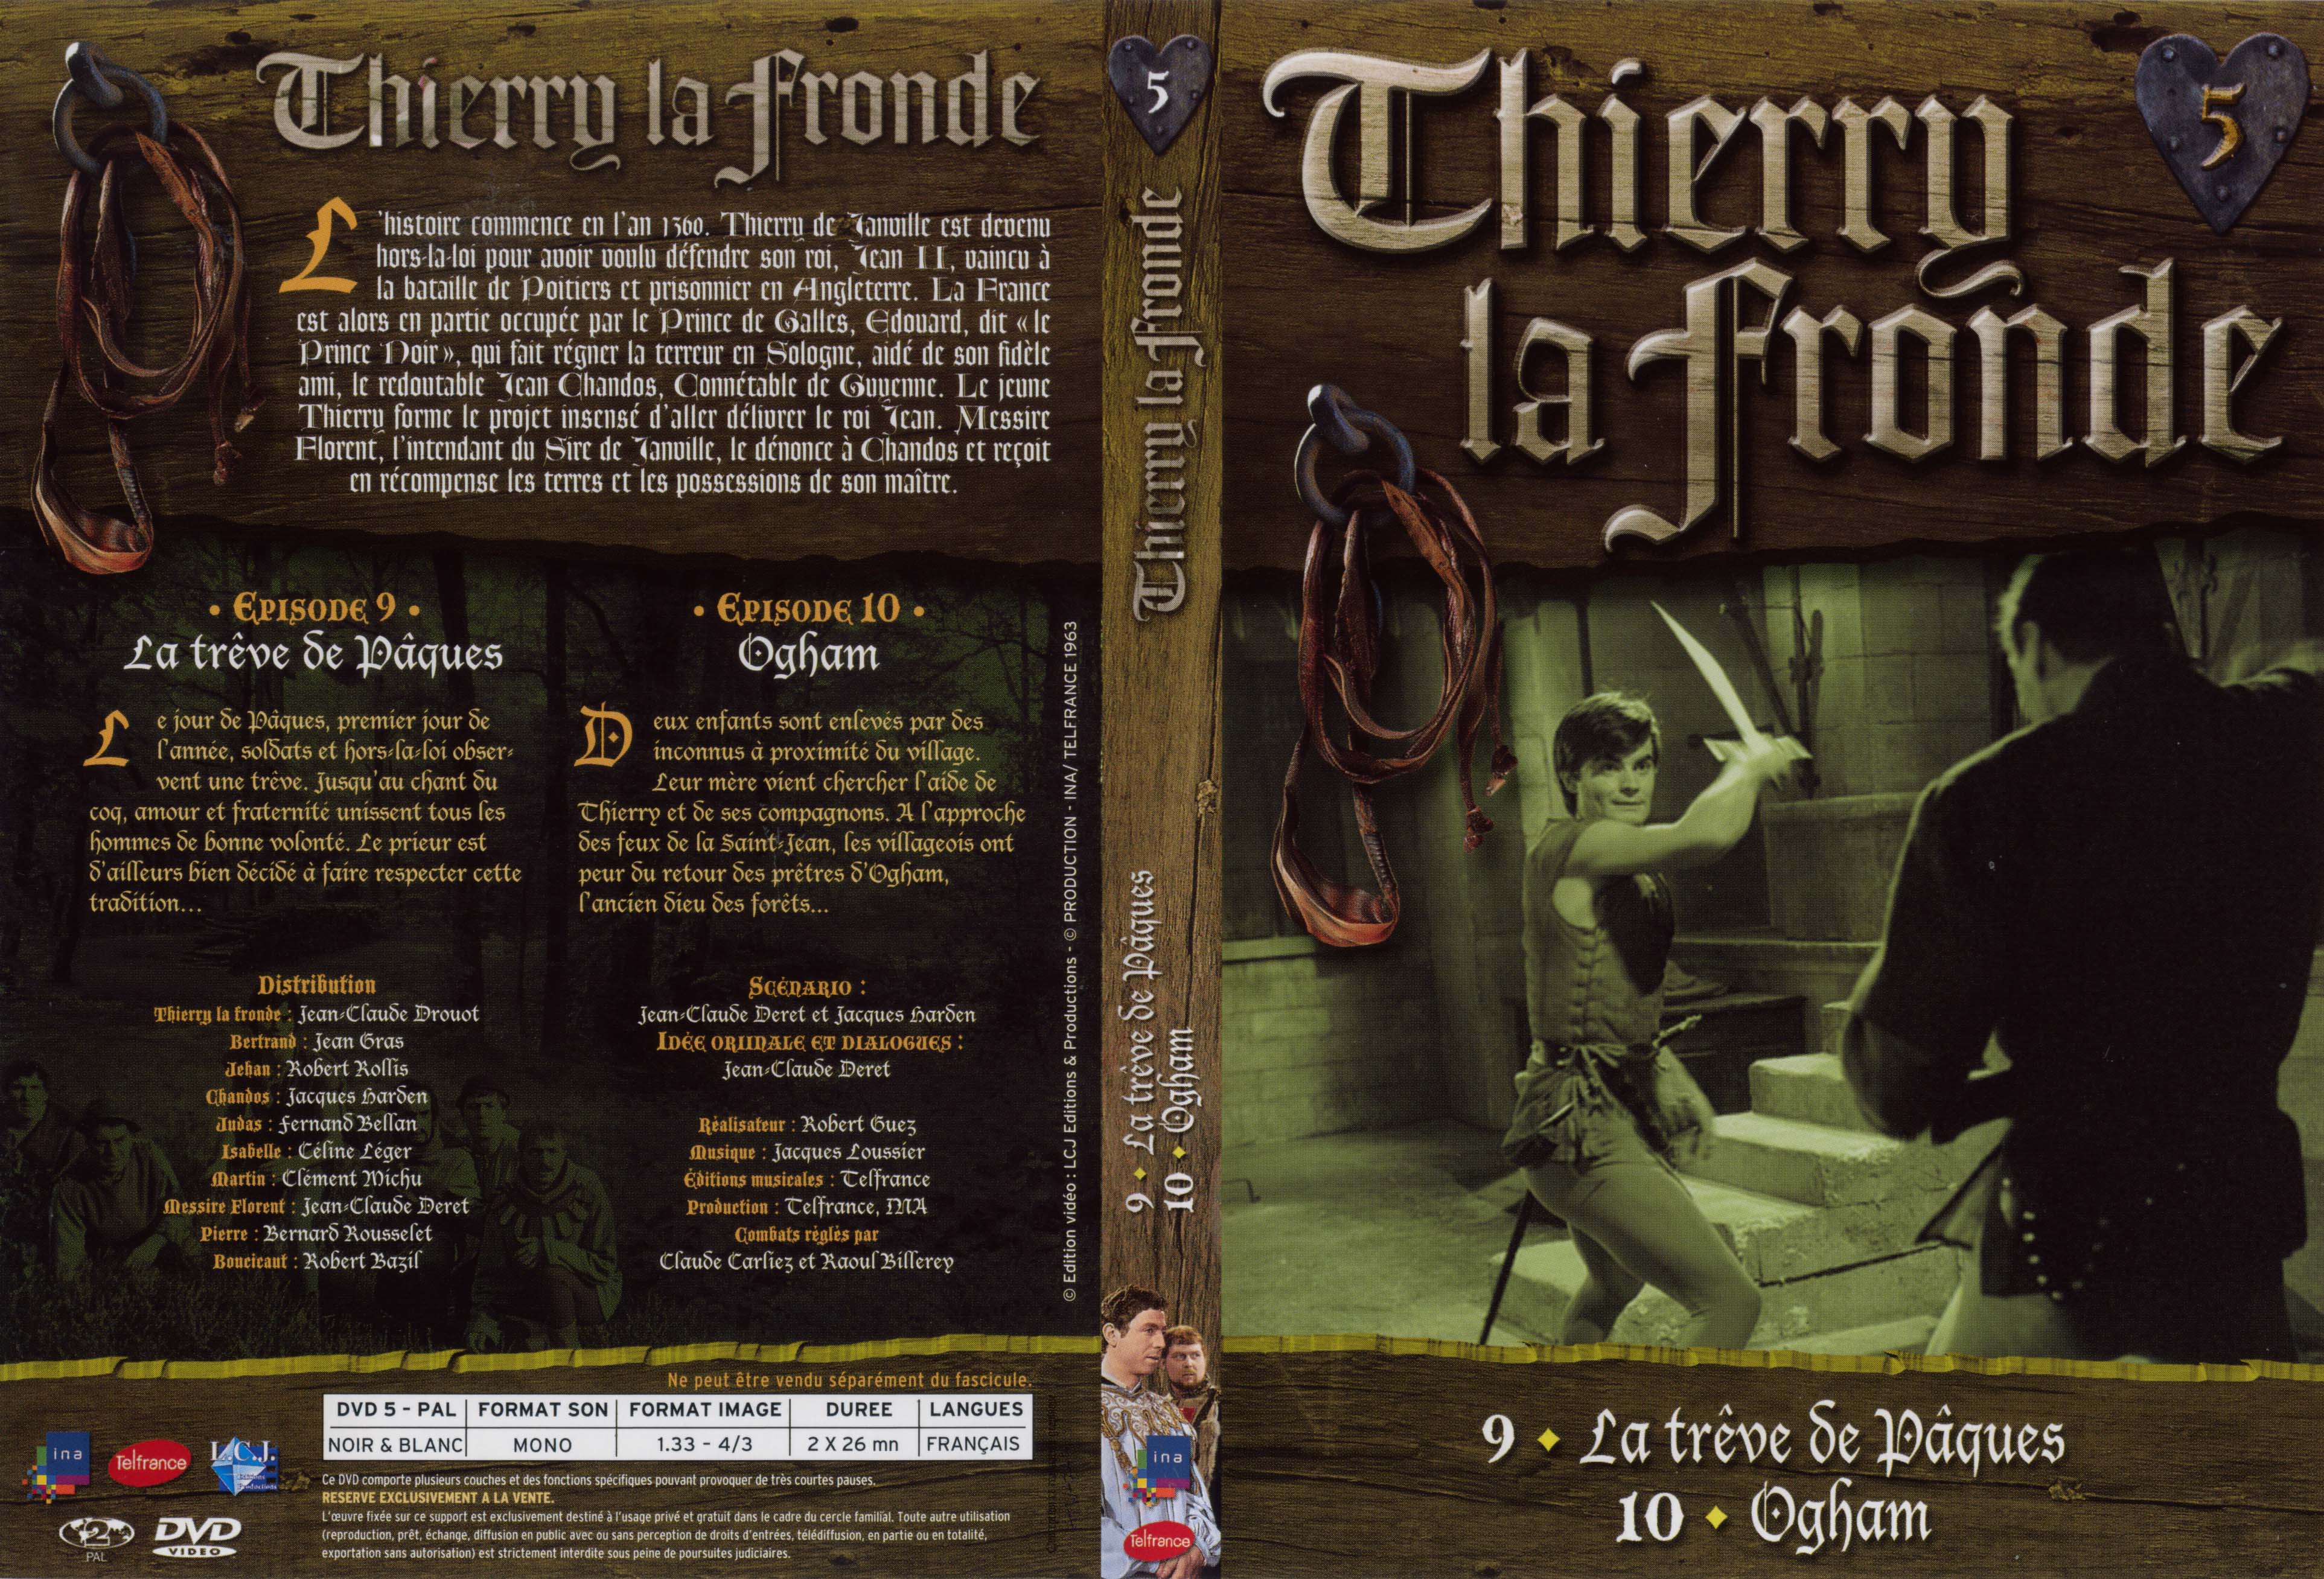 Jaquette DVD Thierry la Fronde vol 05